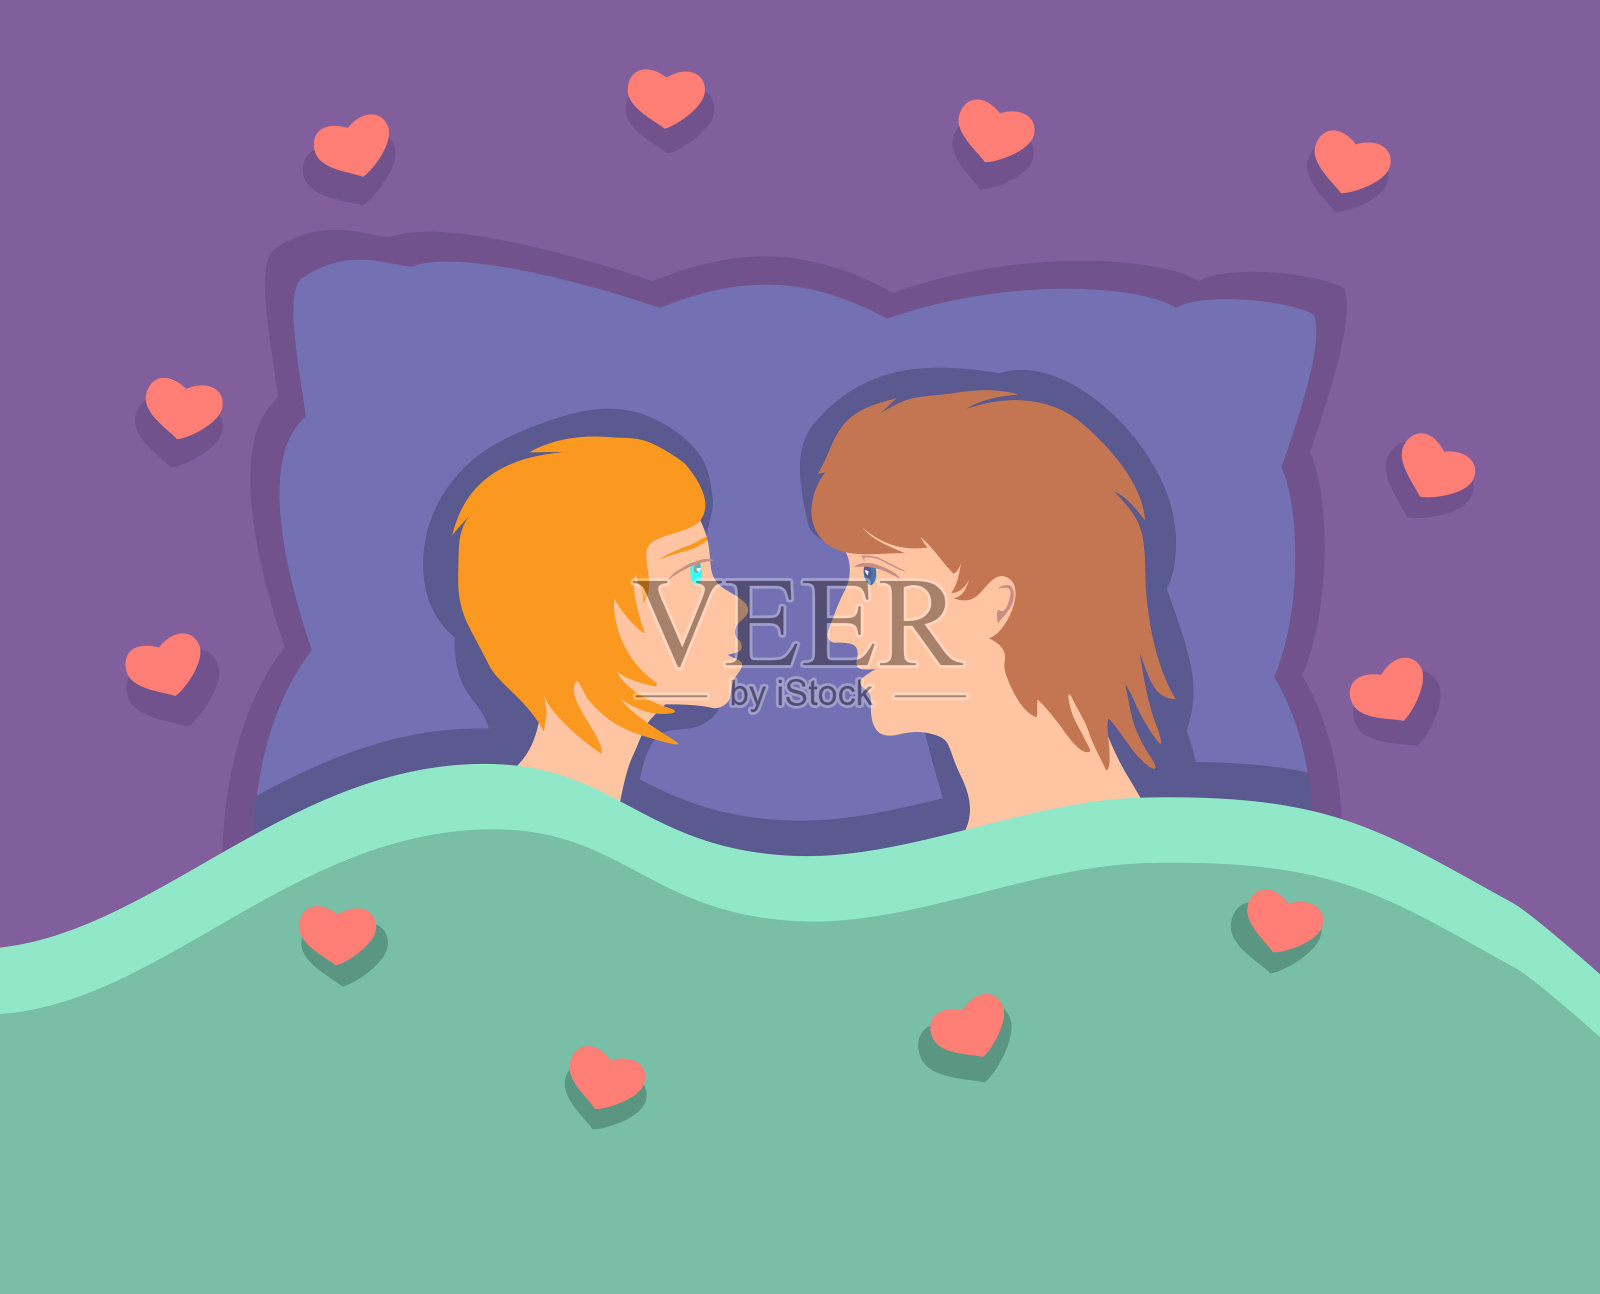 一对幸福的情侣面对面躺在枕头上。插画图片素材